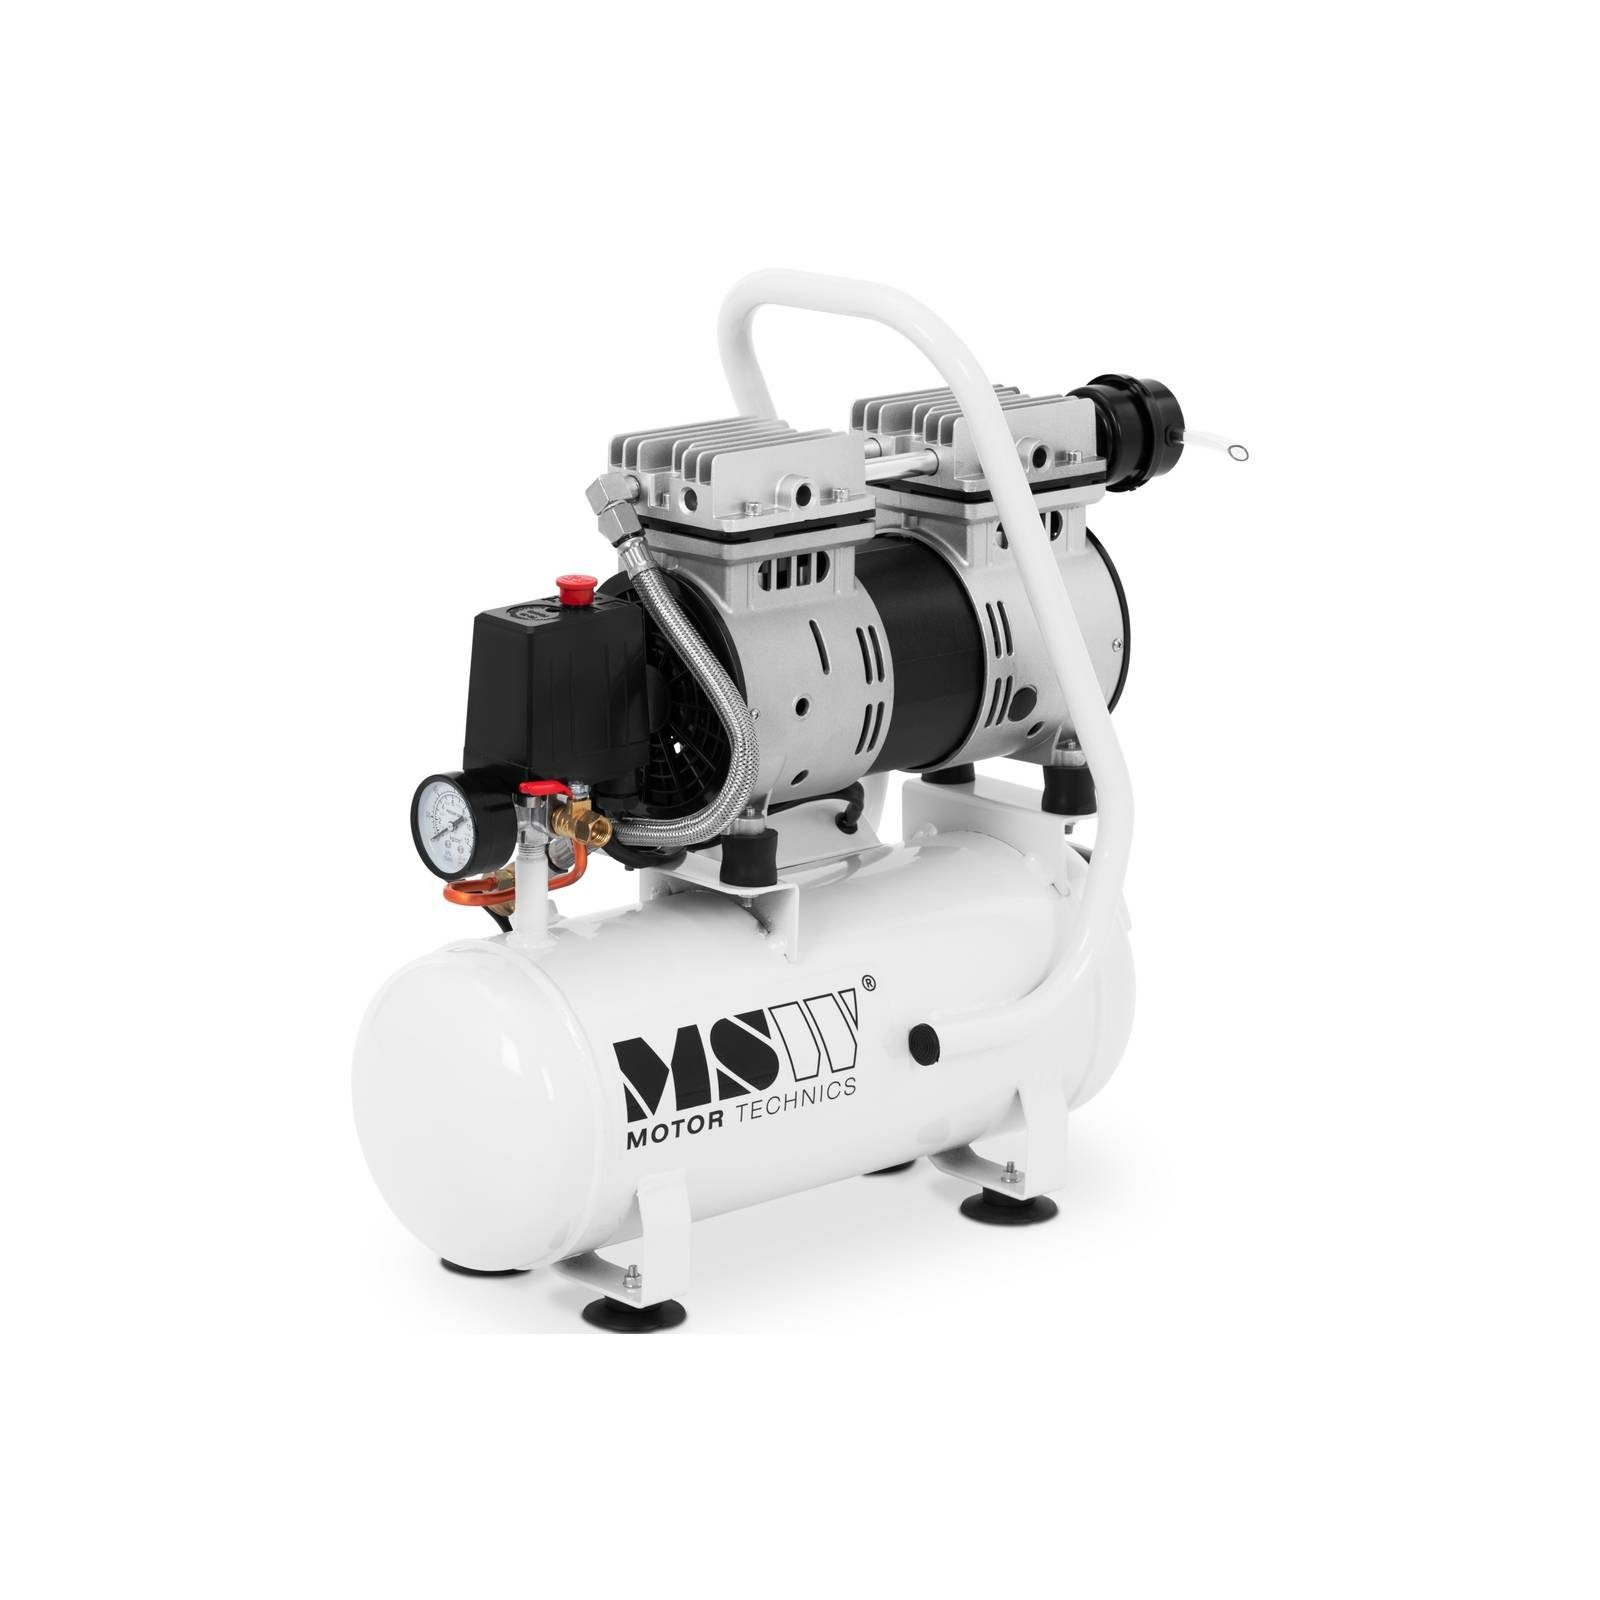 MSW Kompressor Kompressor ölfrei - 9 L - 550 W Druckluft